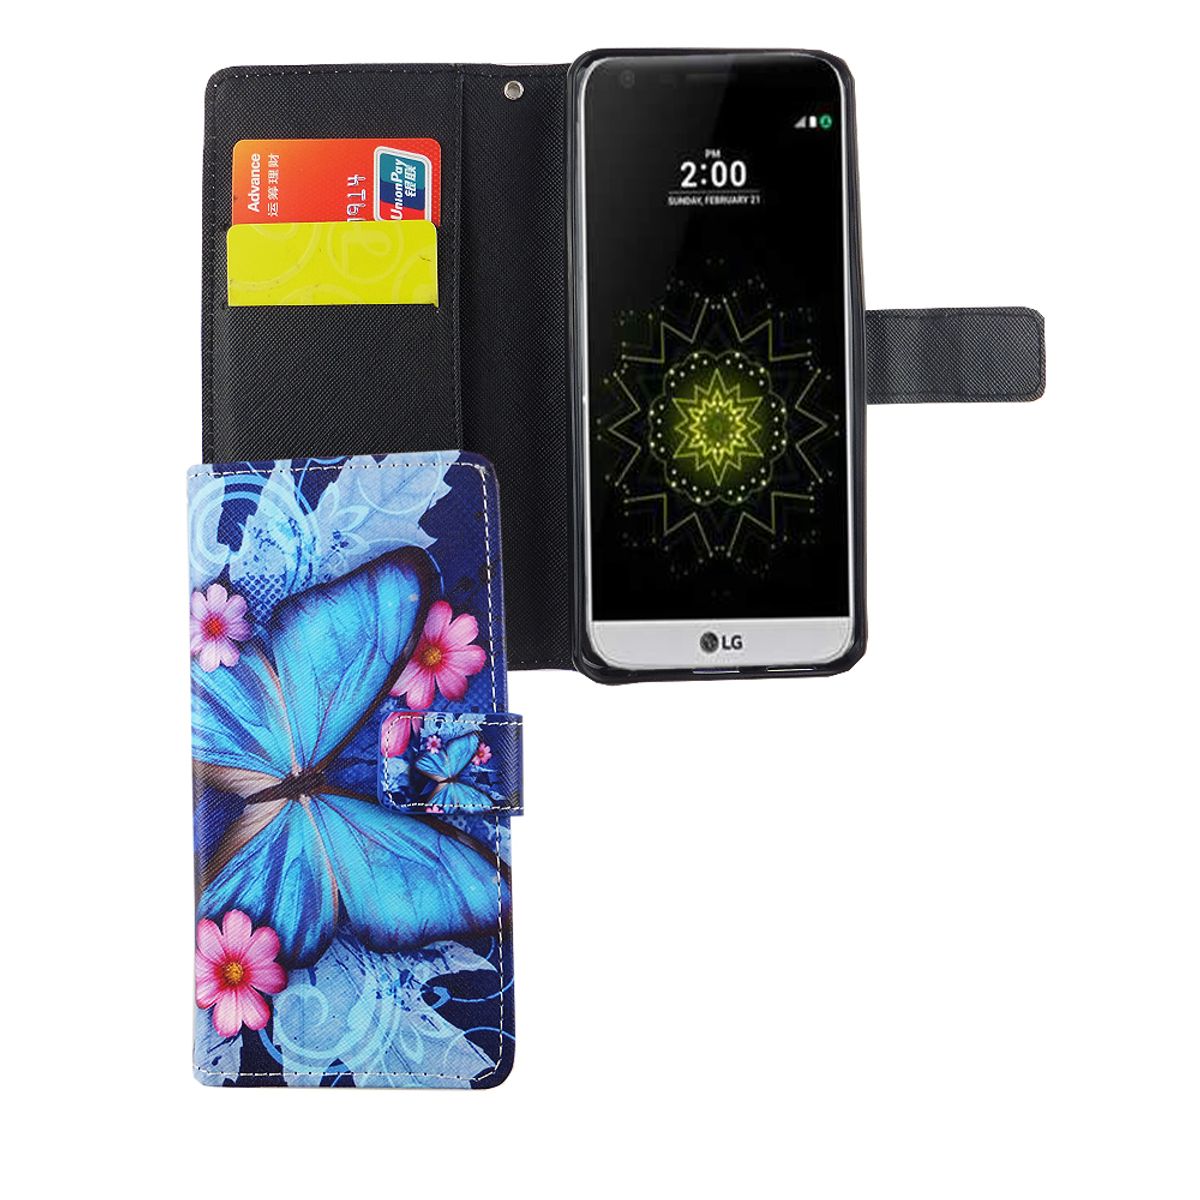 König Design mobile phone case protective case Lg G6 smartphone flip case butterfly design Blau